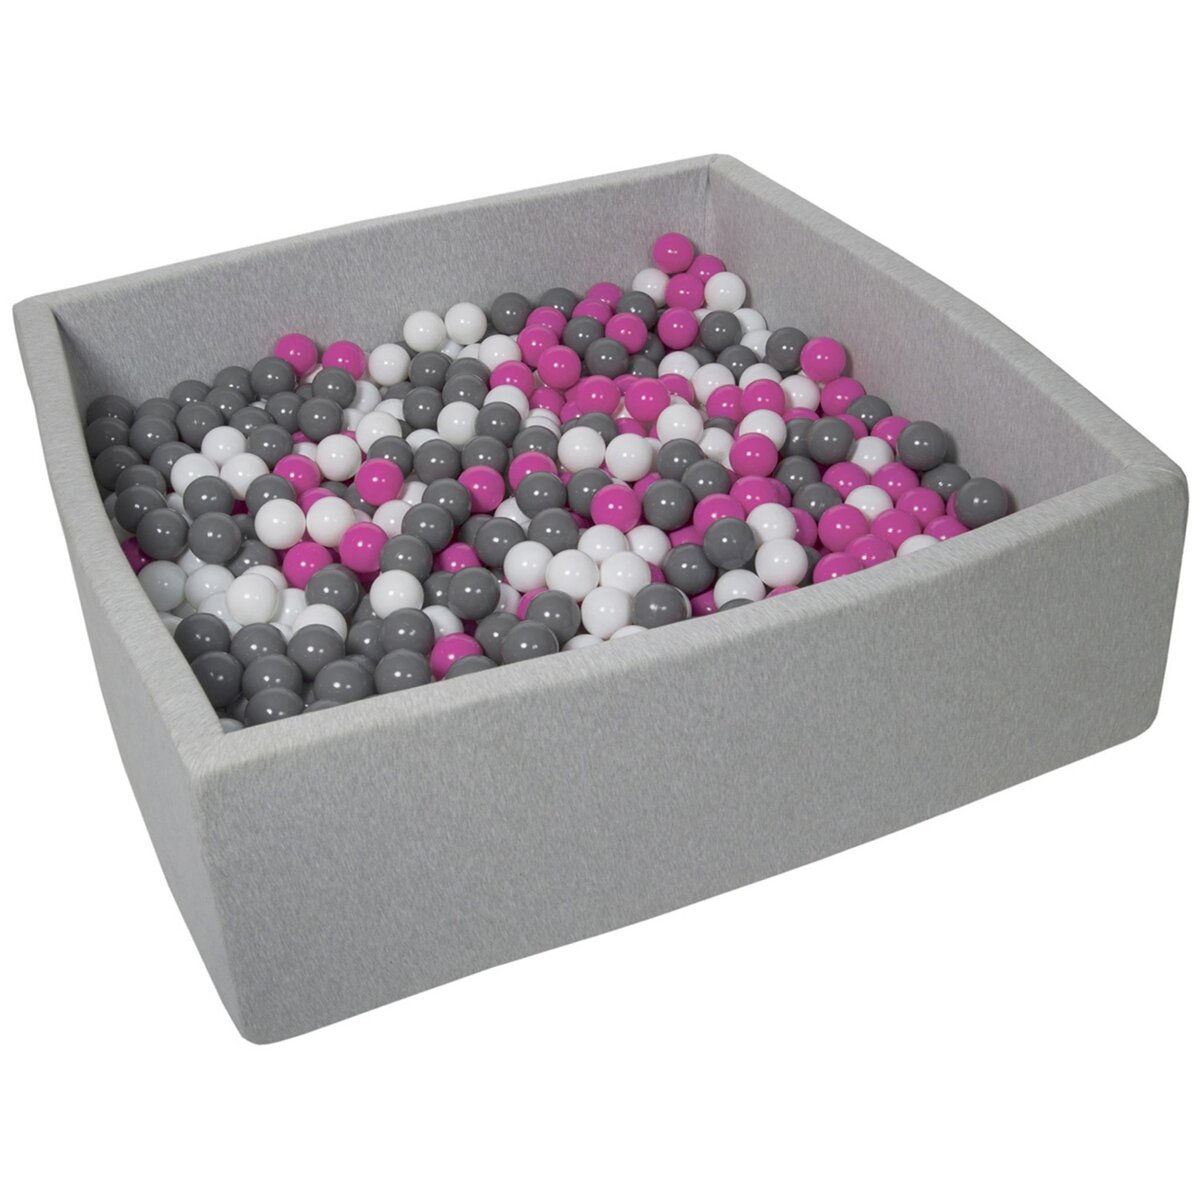  Piscine à balles pour enfant, 120x120 cm, Aire de jeu + 900 balles blanc, rose, gris